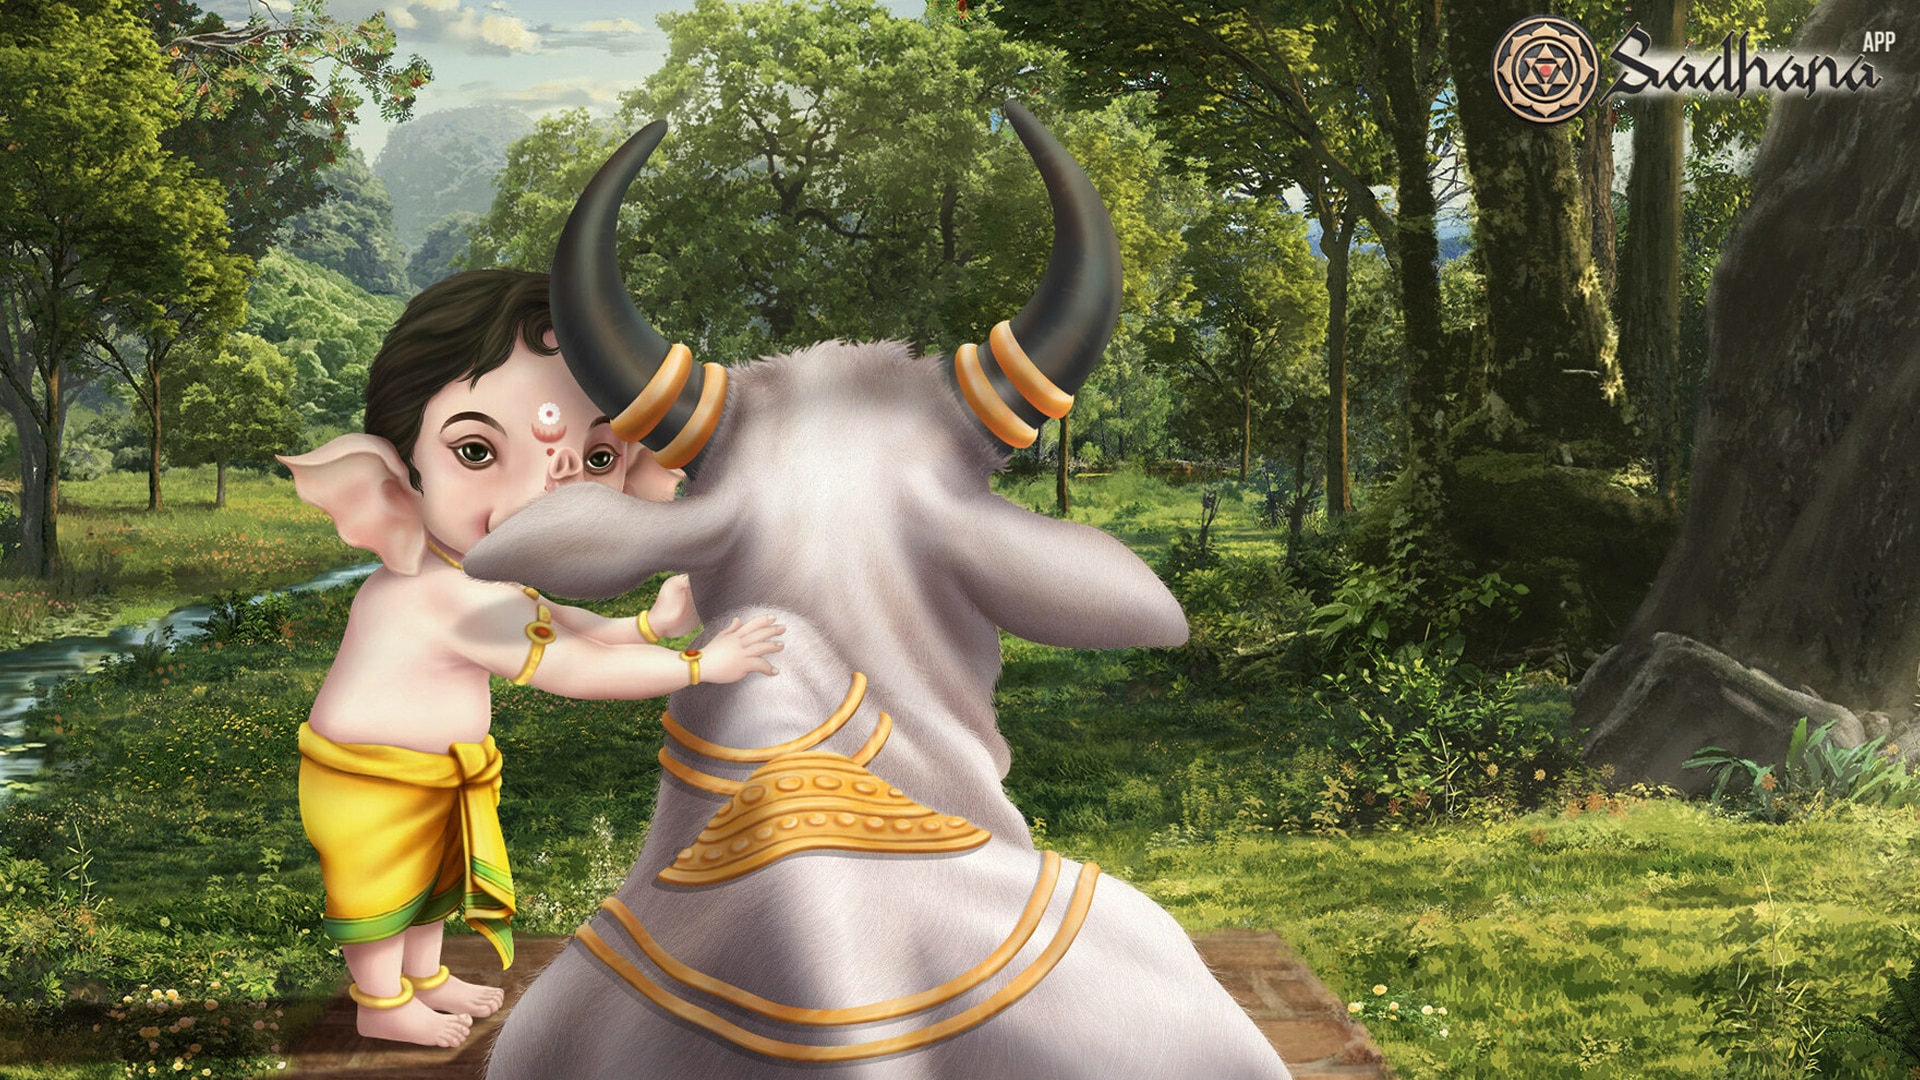 The Sadhana app is raising 10,000 prayers for Shiva this Maha Shivratri